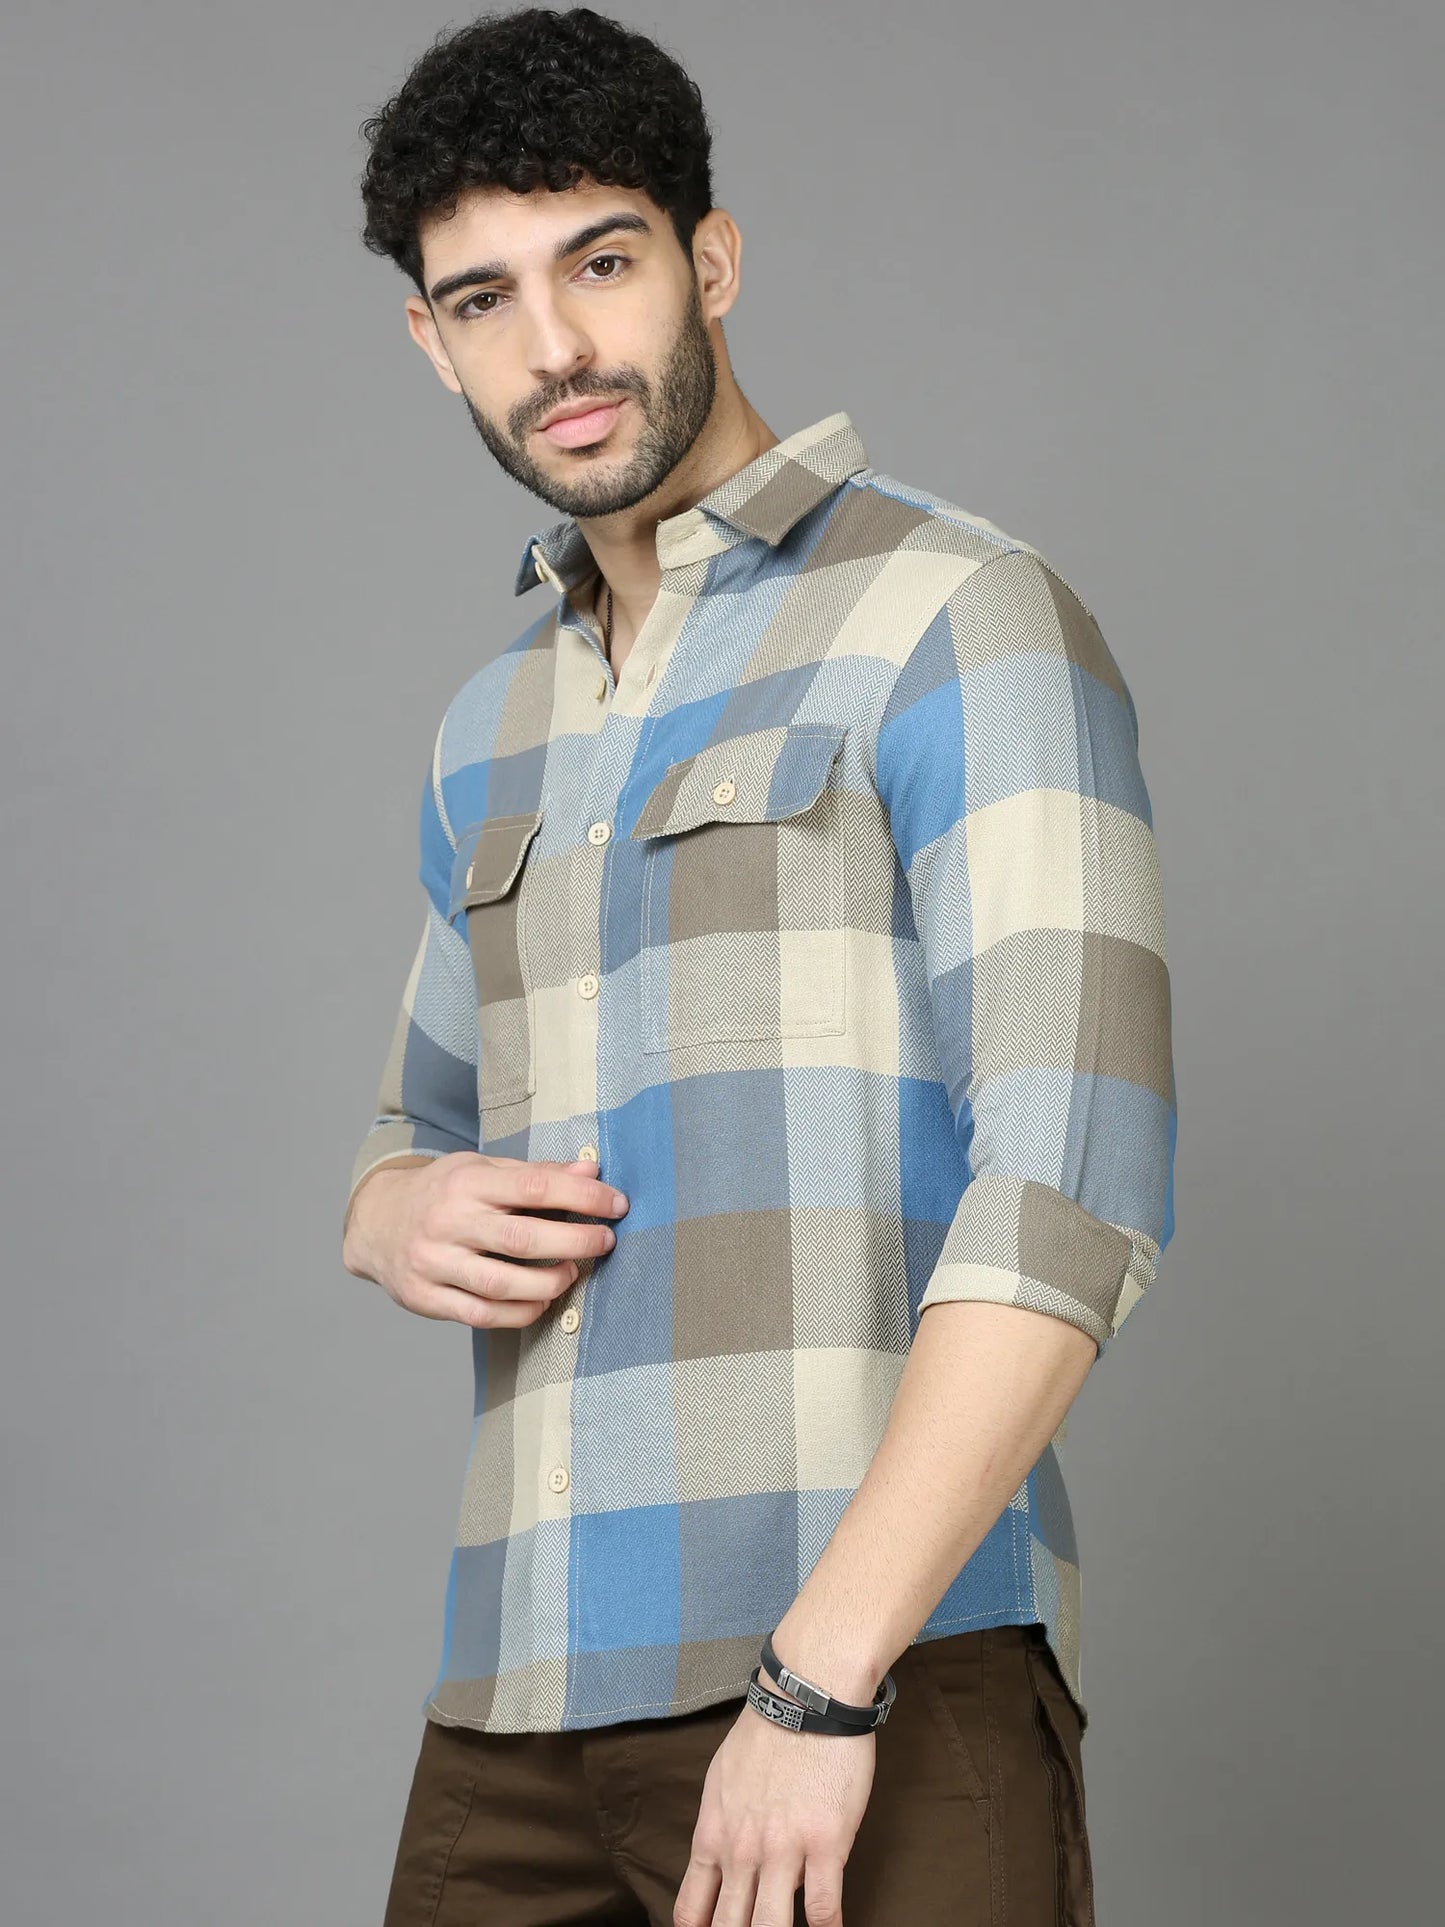 Cool Dapper Blue Checkered Shirt for Men 